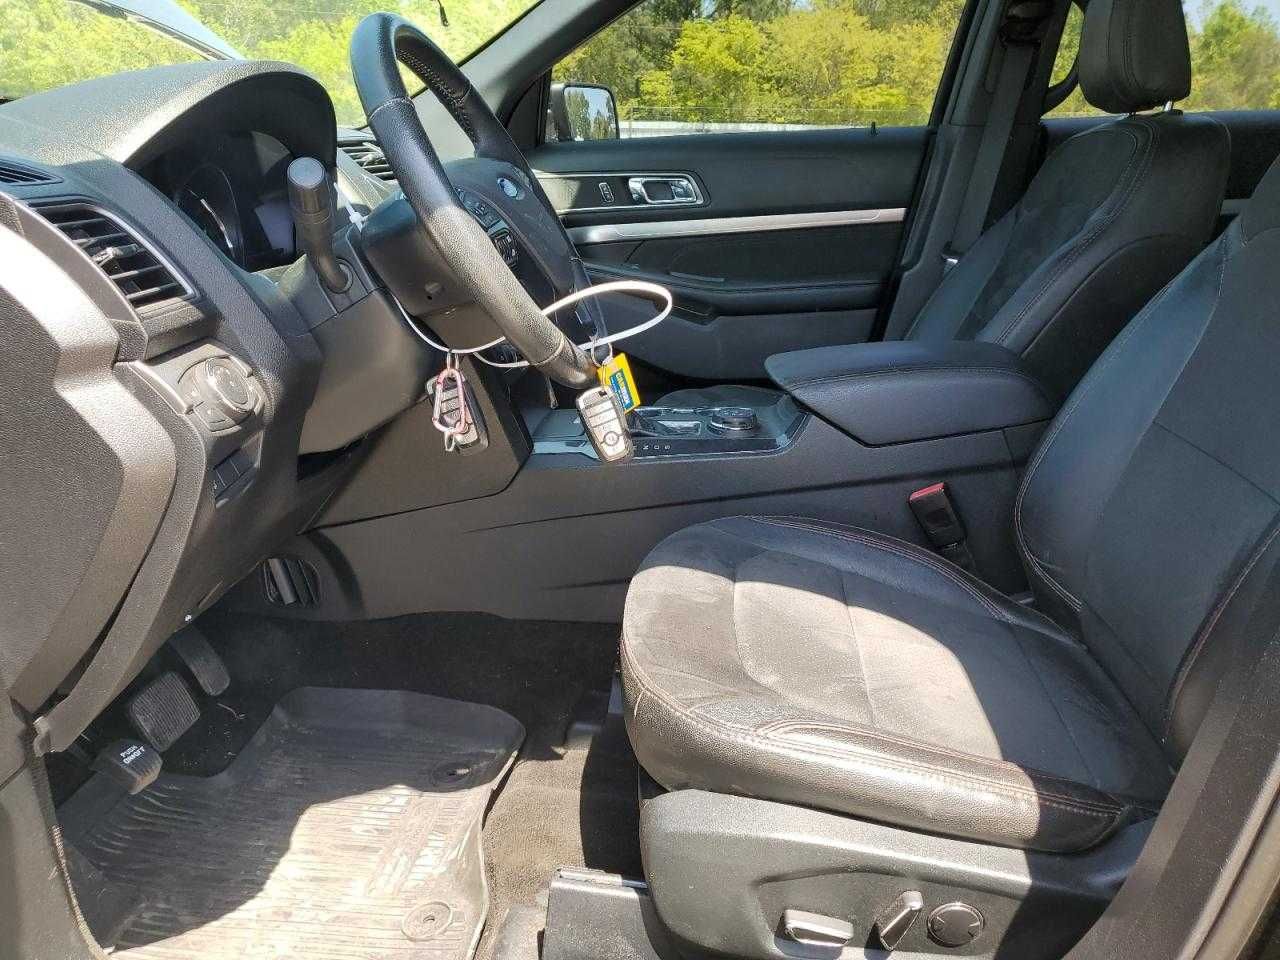 Ford Explorer Xlt 2018